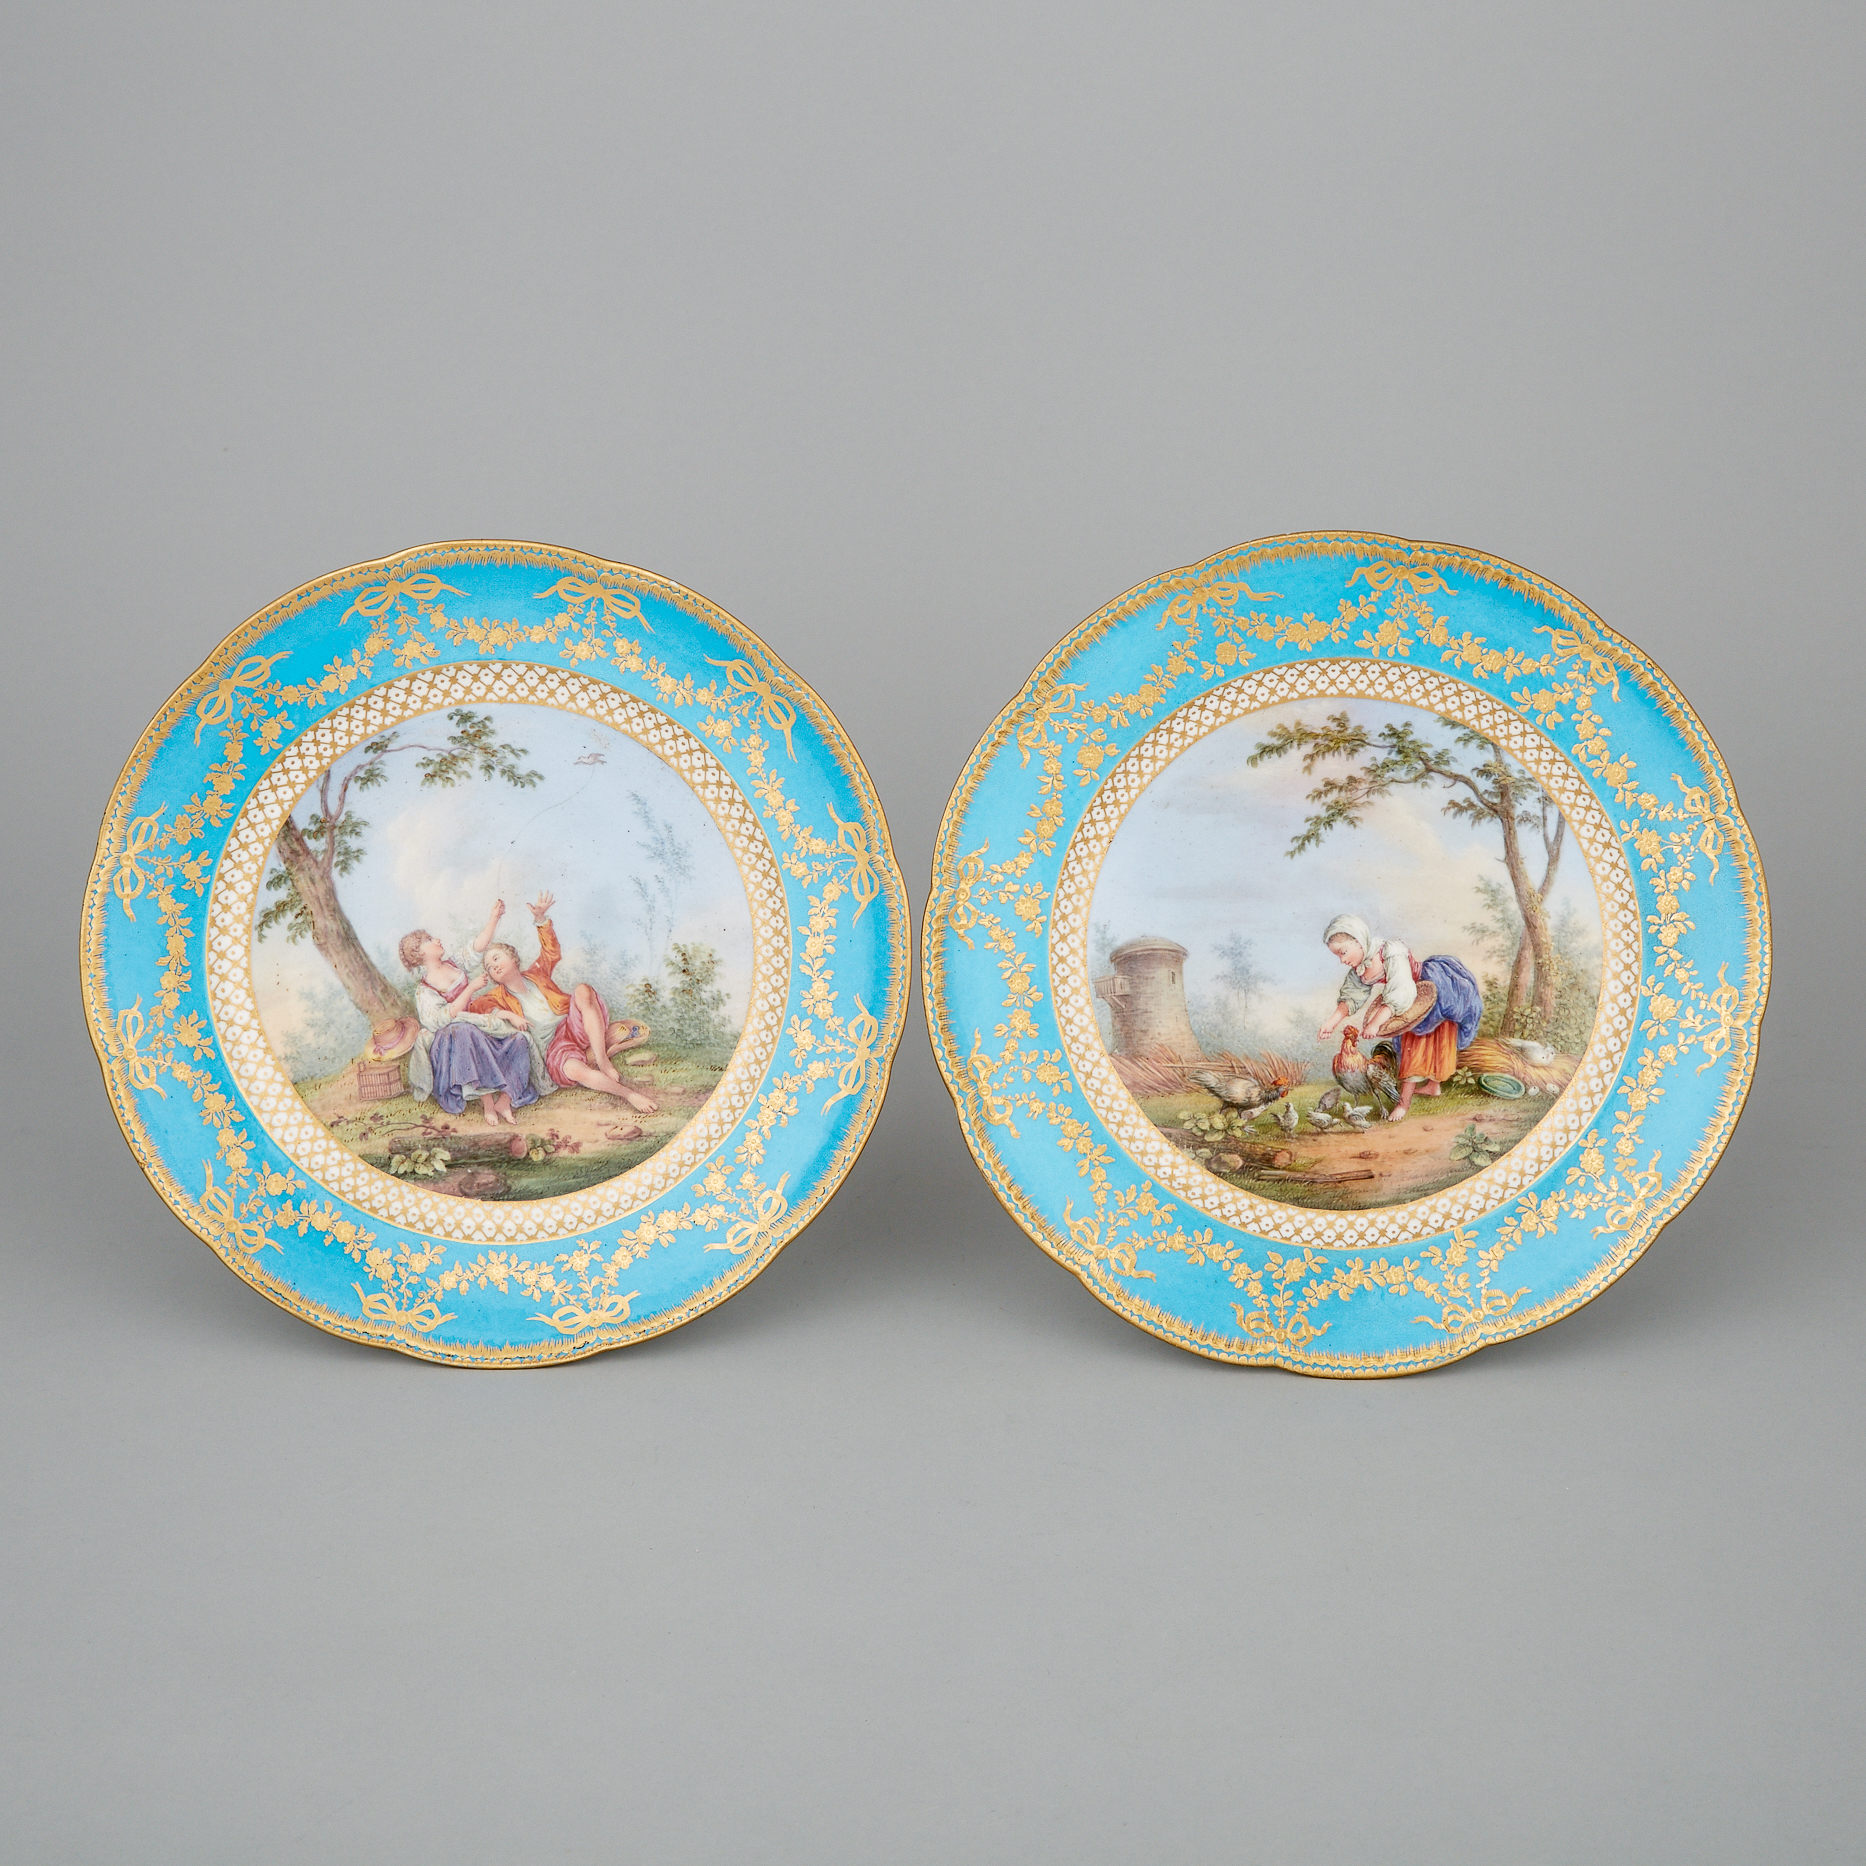 Pair of 'Sèvres' Bleu Céleste Ground Plates, late 19th century